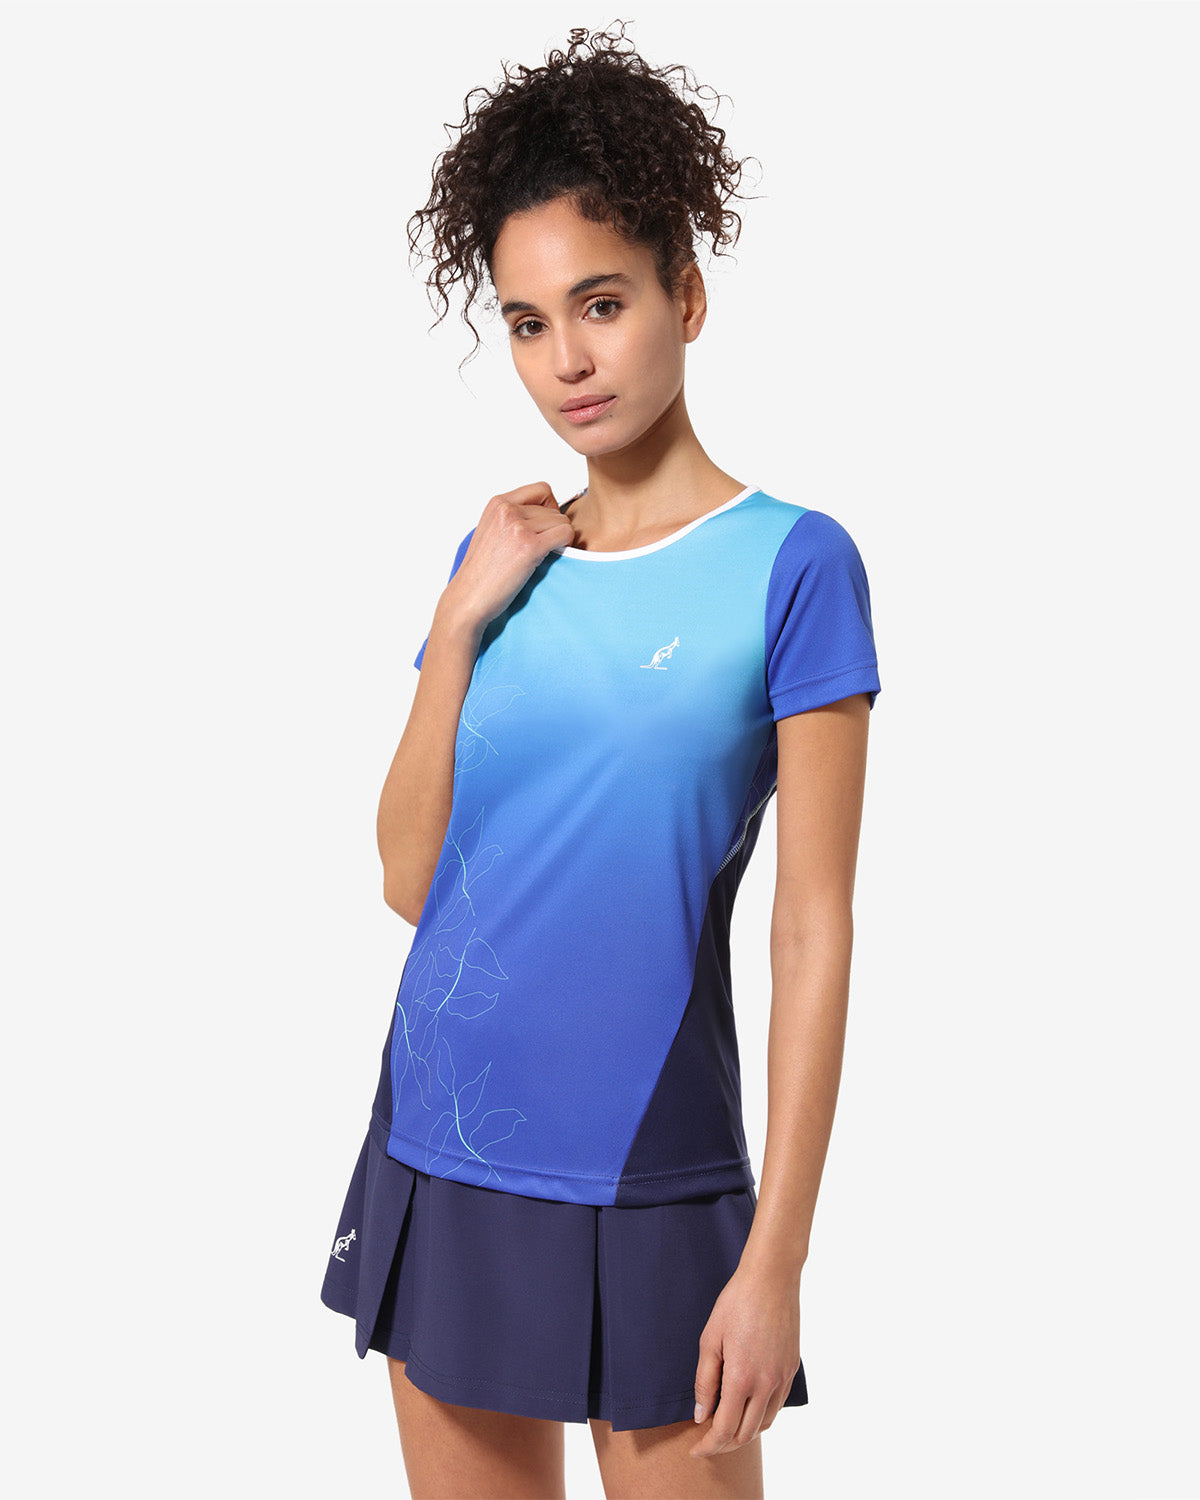 Grade T-shirt: Australian Tennis